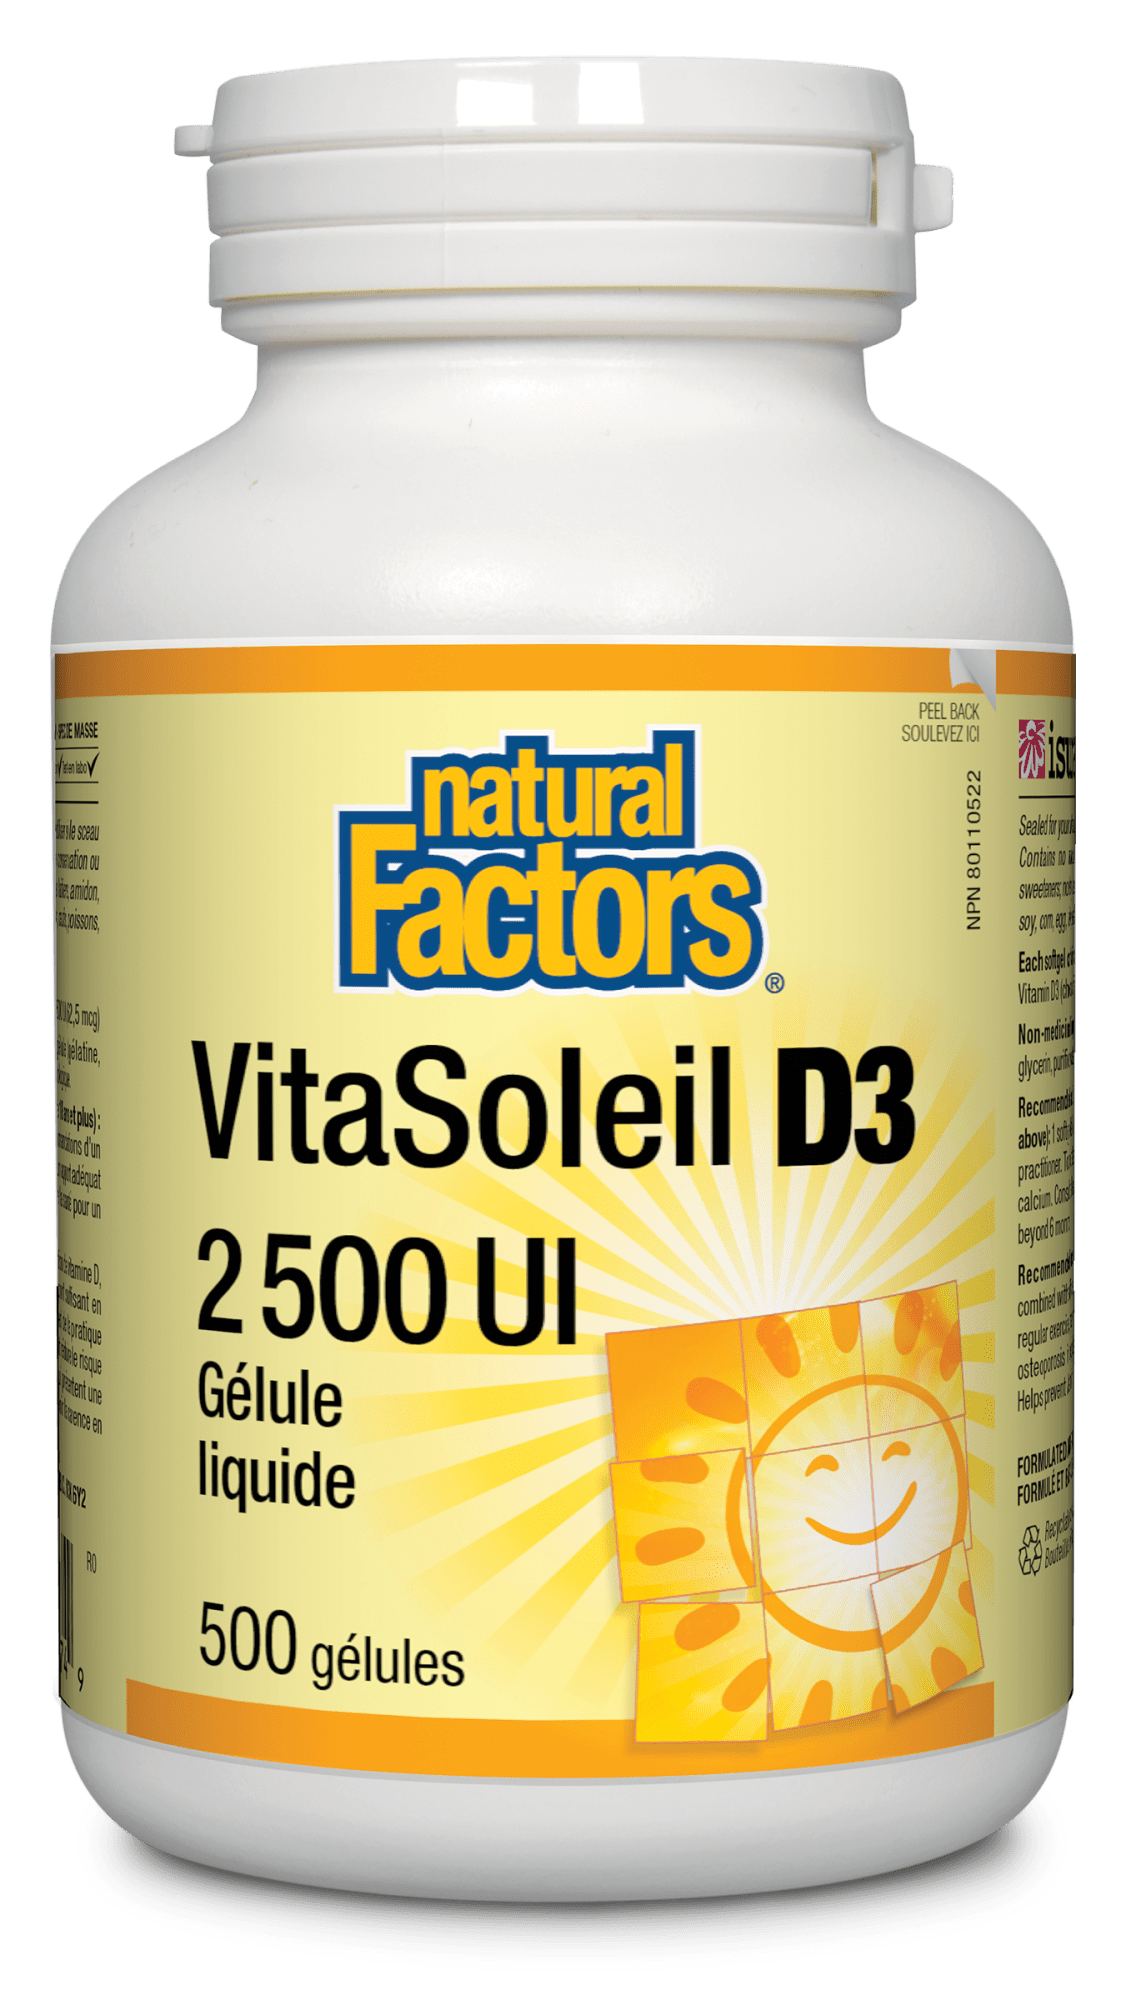 VitaSoleil D3 gélules 2 500 UI, Natural Factors|v|image|1074